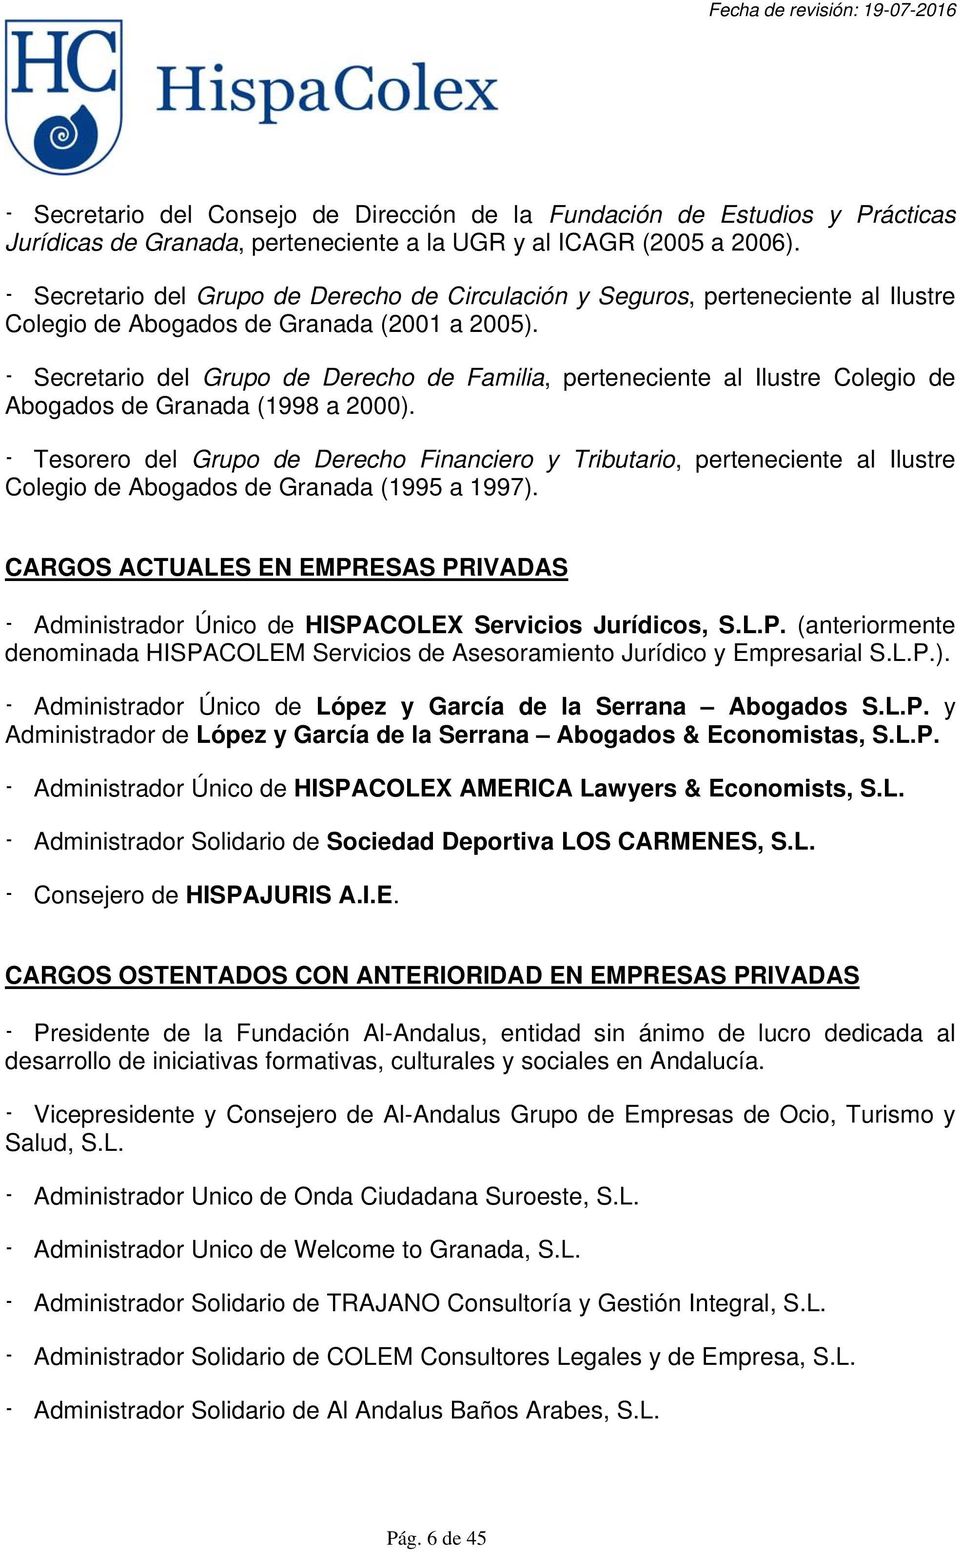 - Secretario del Grupo de Derecho de Familia, perteneciente al Ilustre Colegio de Abogados de Granada (1998 a 2000).